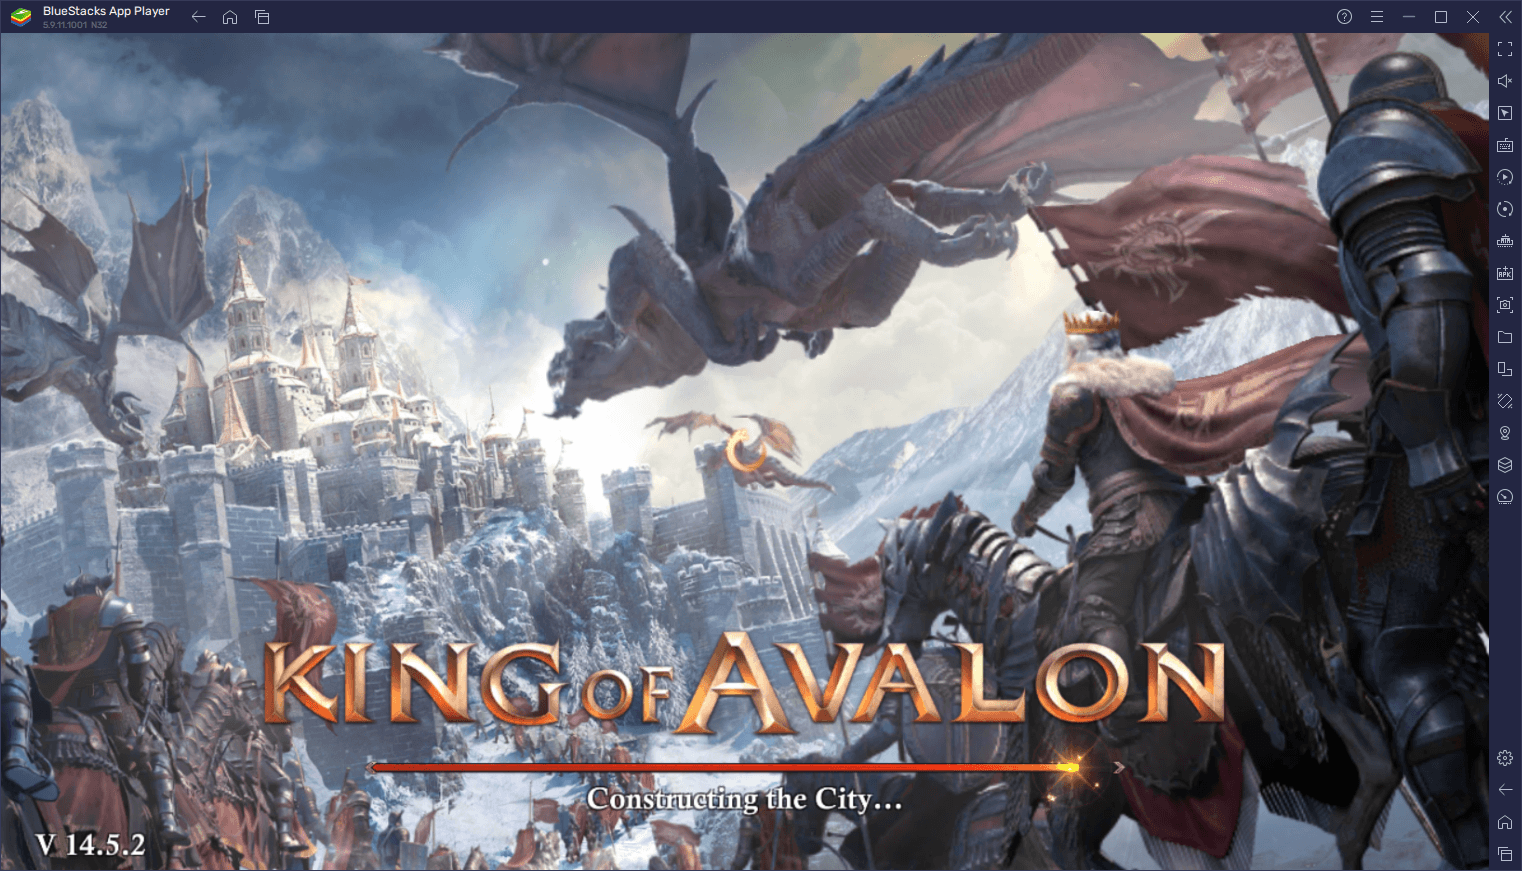 King of Avalon auf dem PC - Wie du mit unseren BlueStacks Tools ganz einfach das stärkste Imperium aufbauen kannst